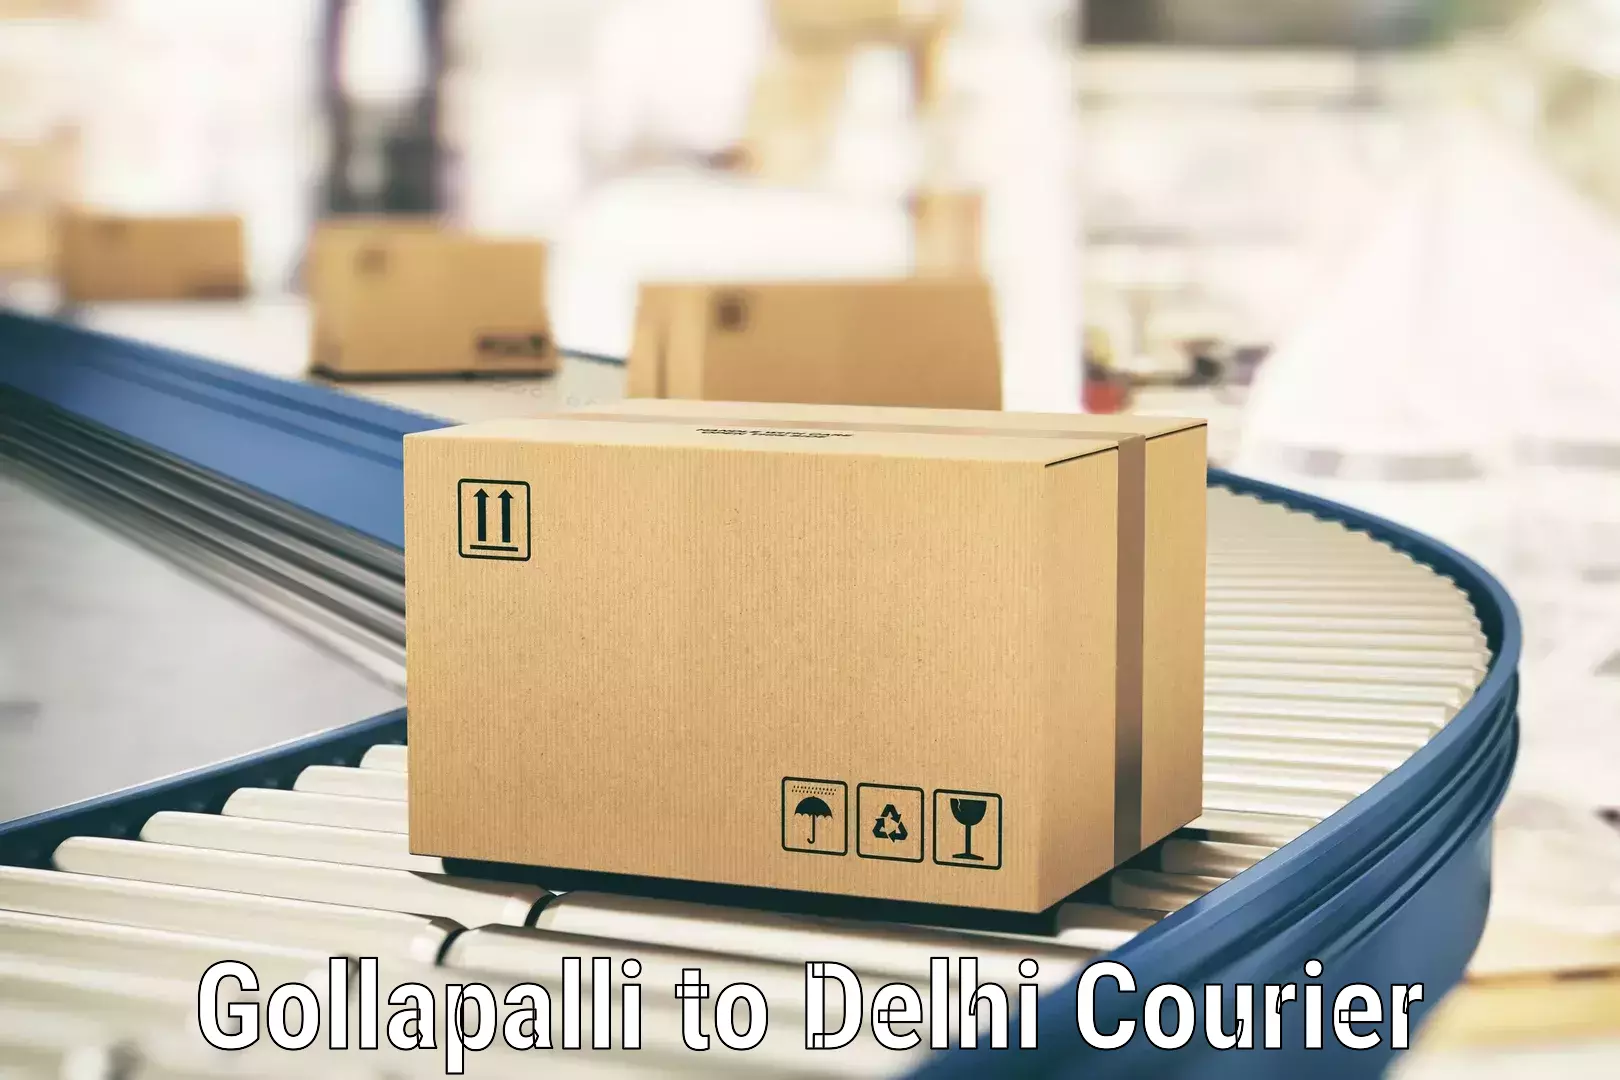 Local delivery service in Gollapalli to Delhi